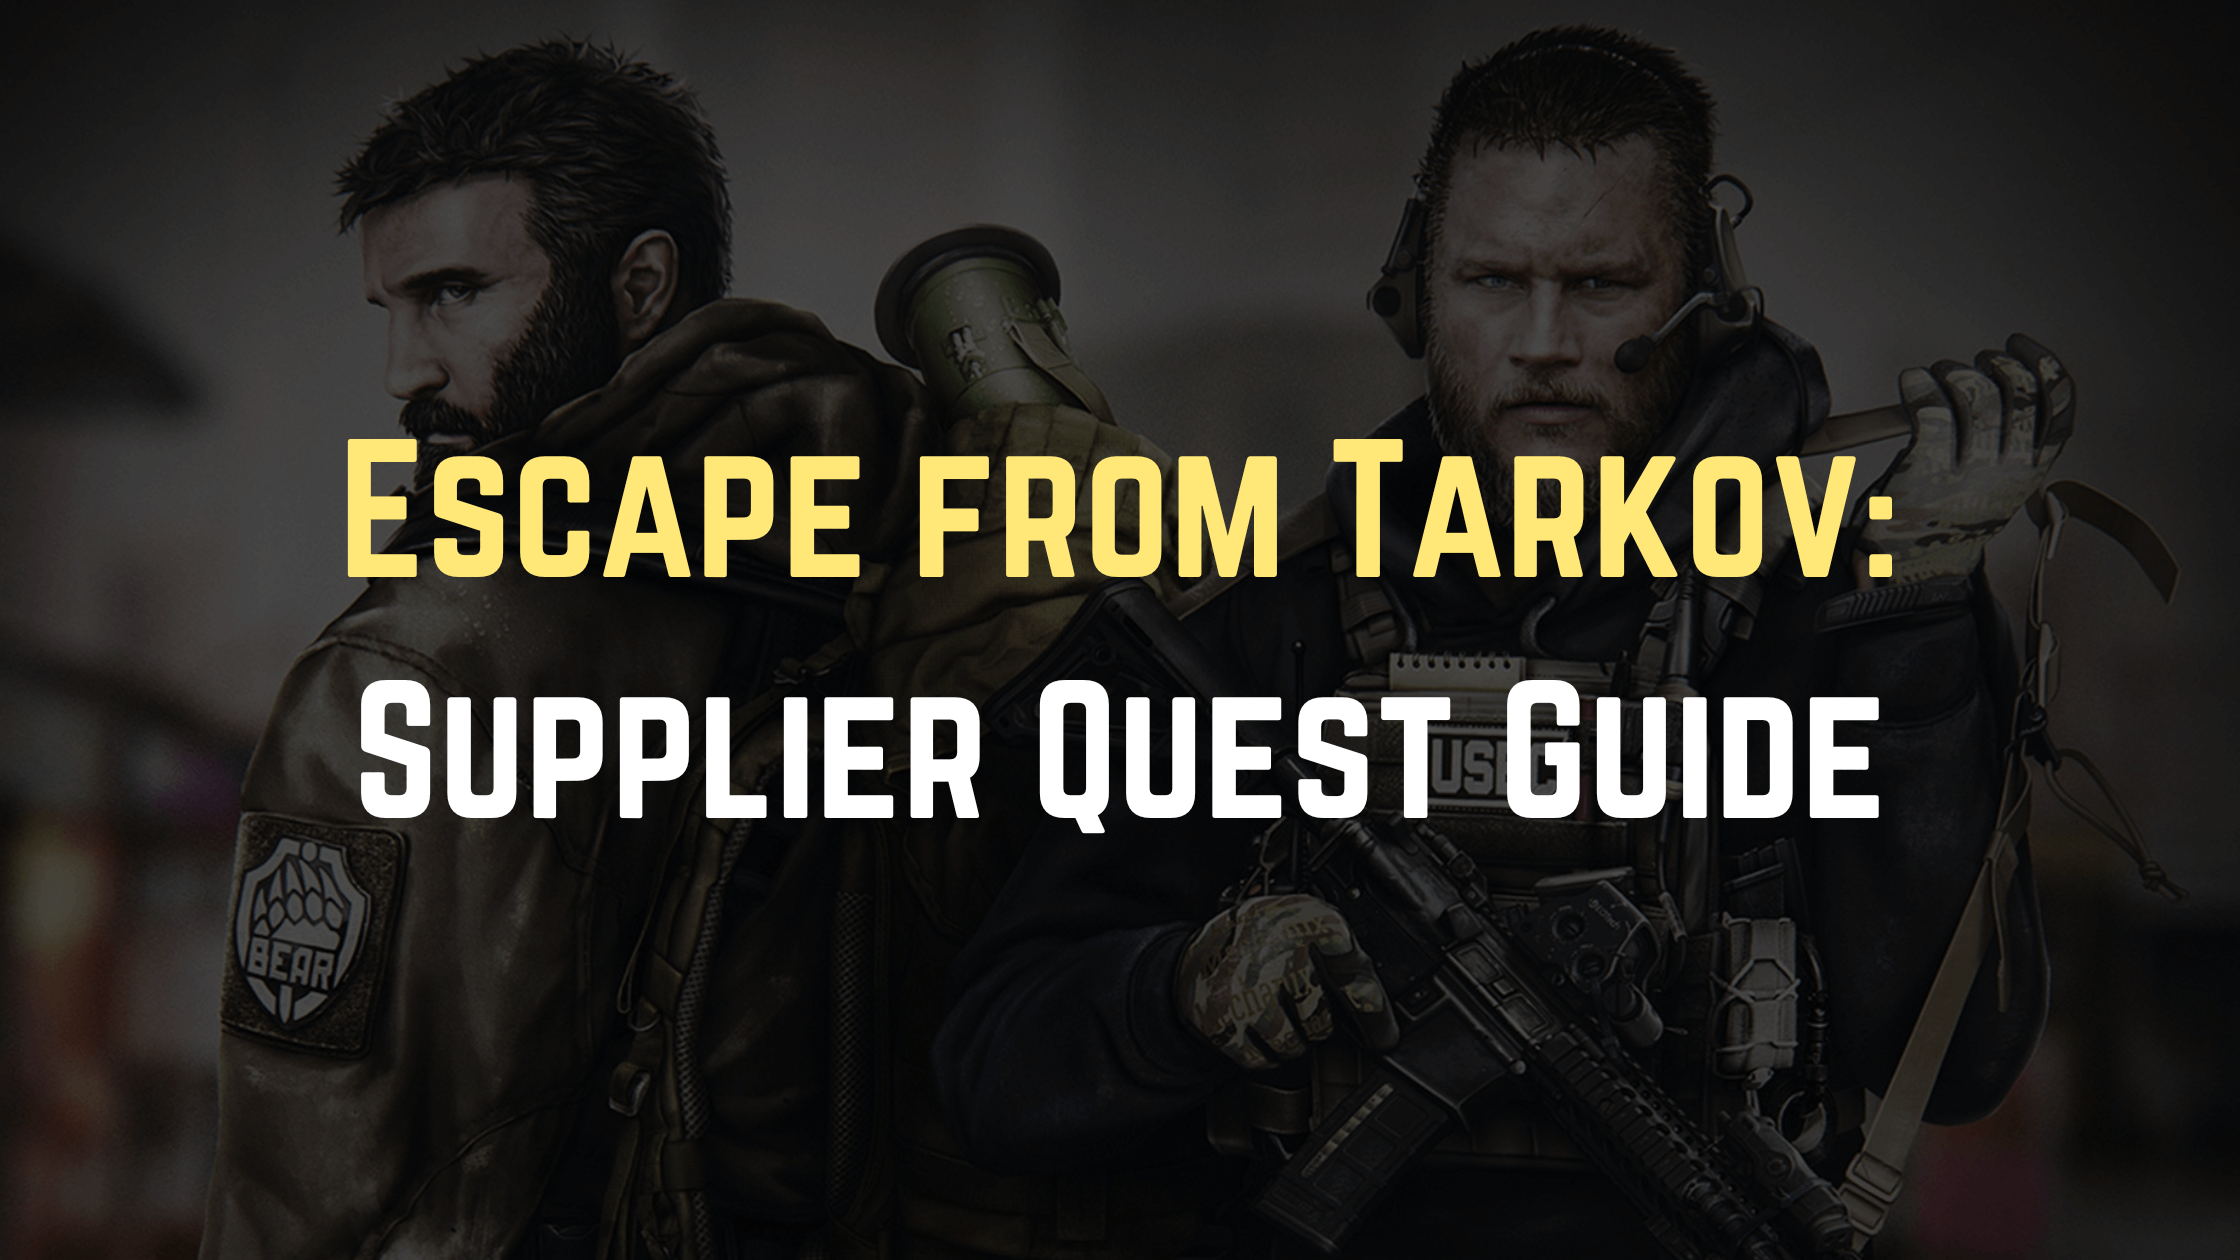 Escape from Tarkov Supplier Quest Guide